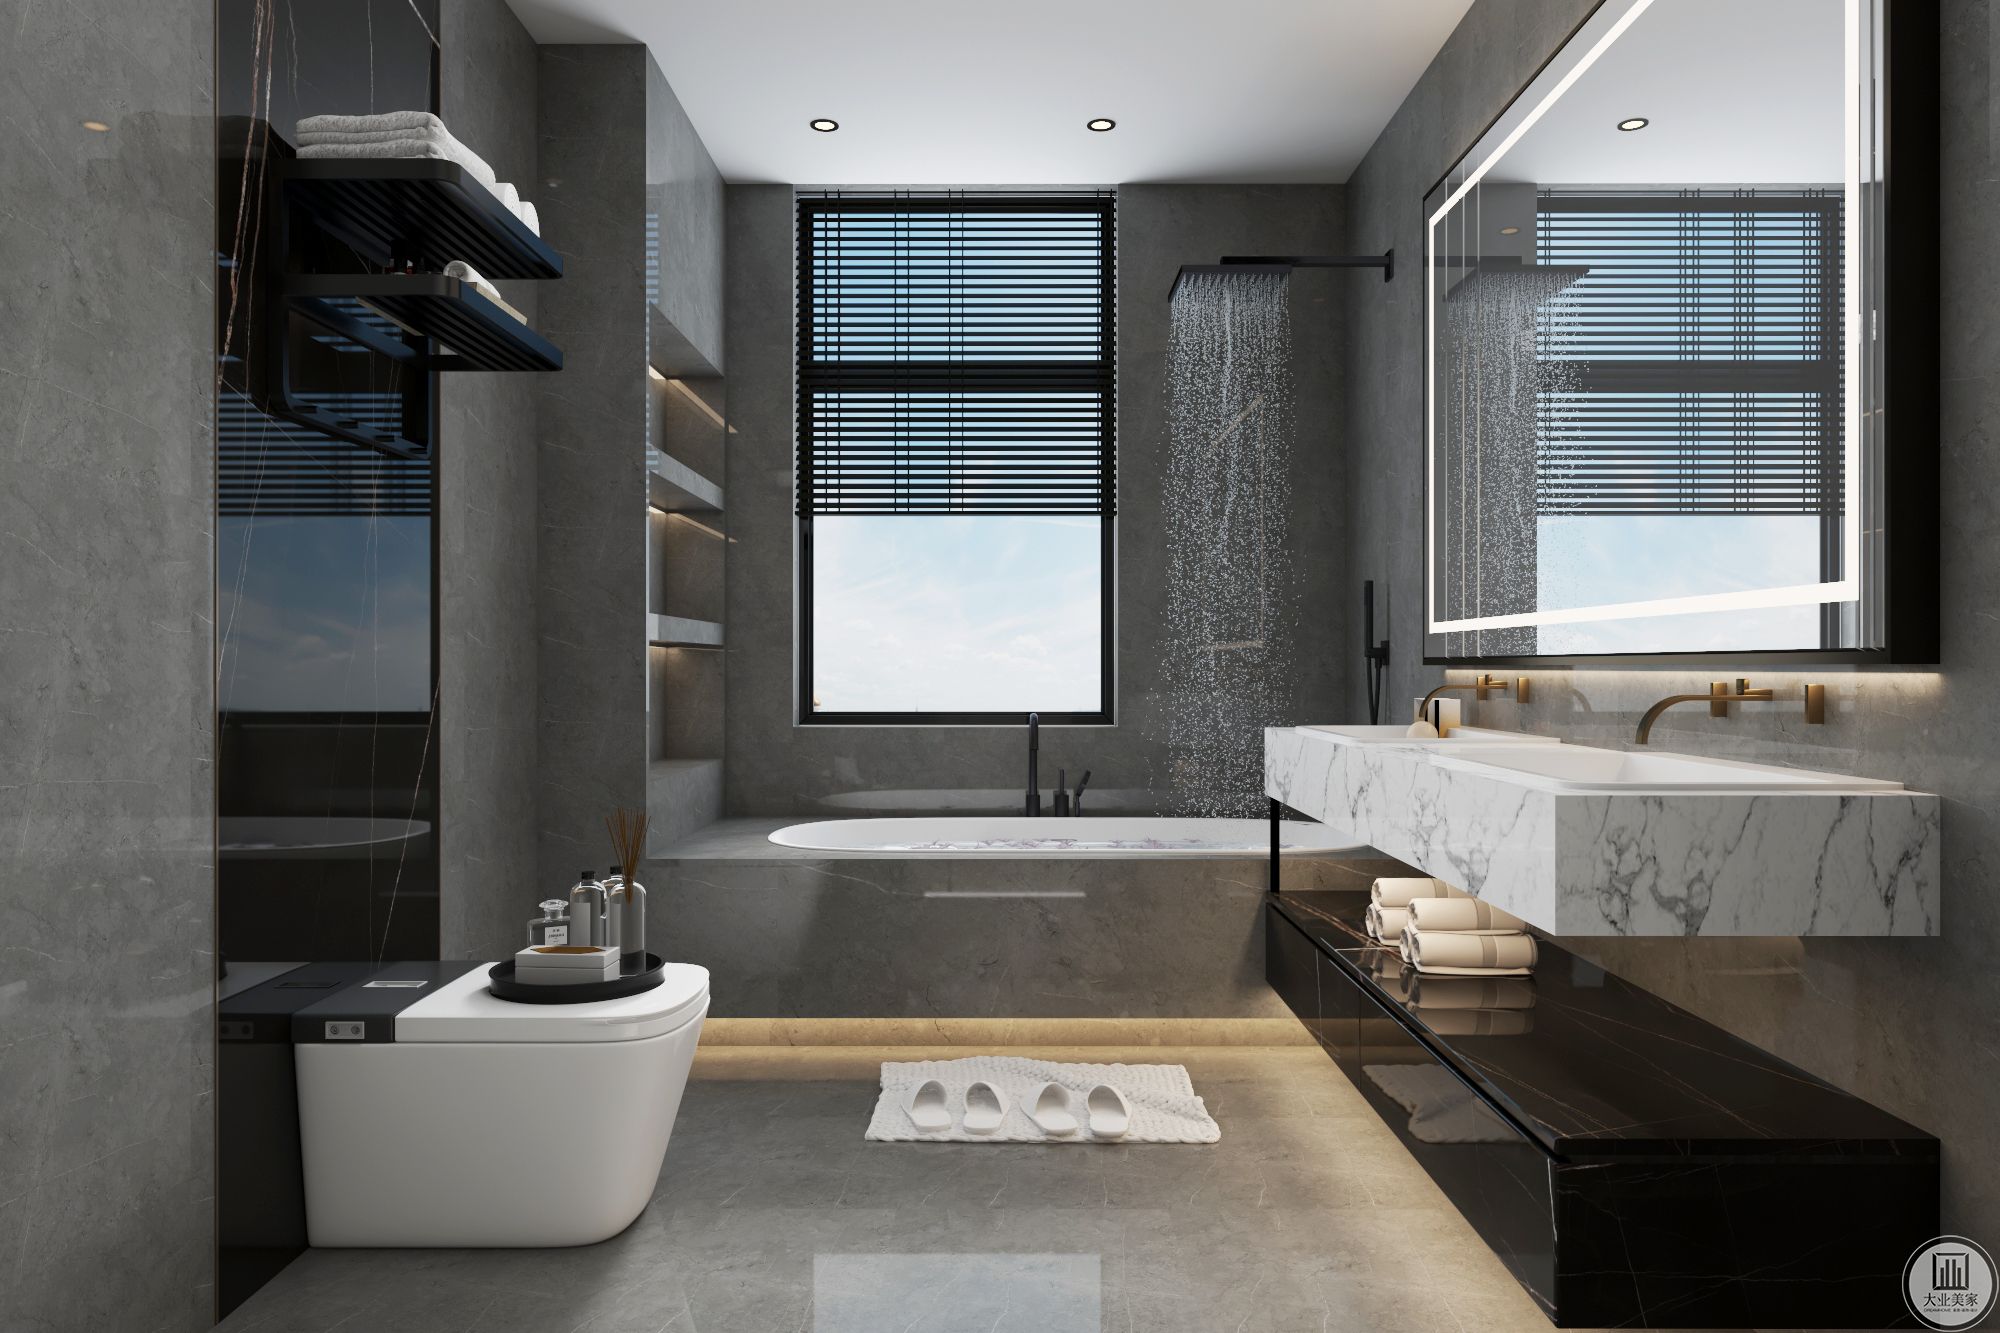 主卫设计浴缸与淋浴相结合的运用，墙面与地面均采用灰色瓷砖，空间更有质感与格调，马桶后边出造型增加层次感